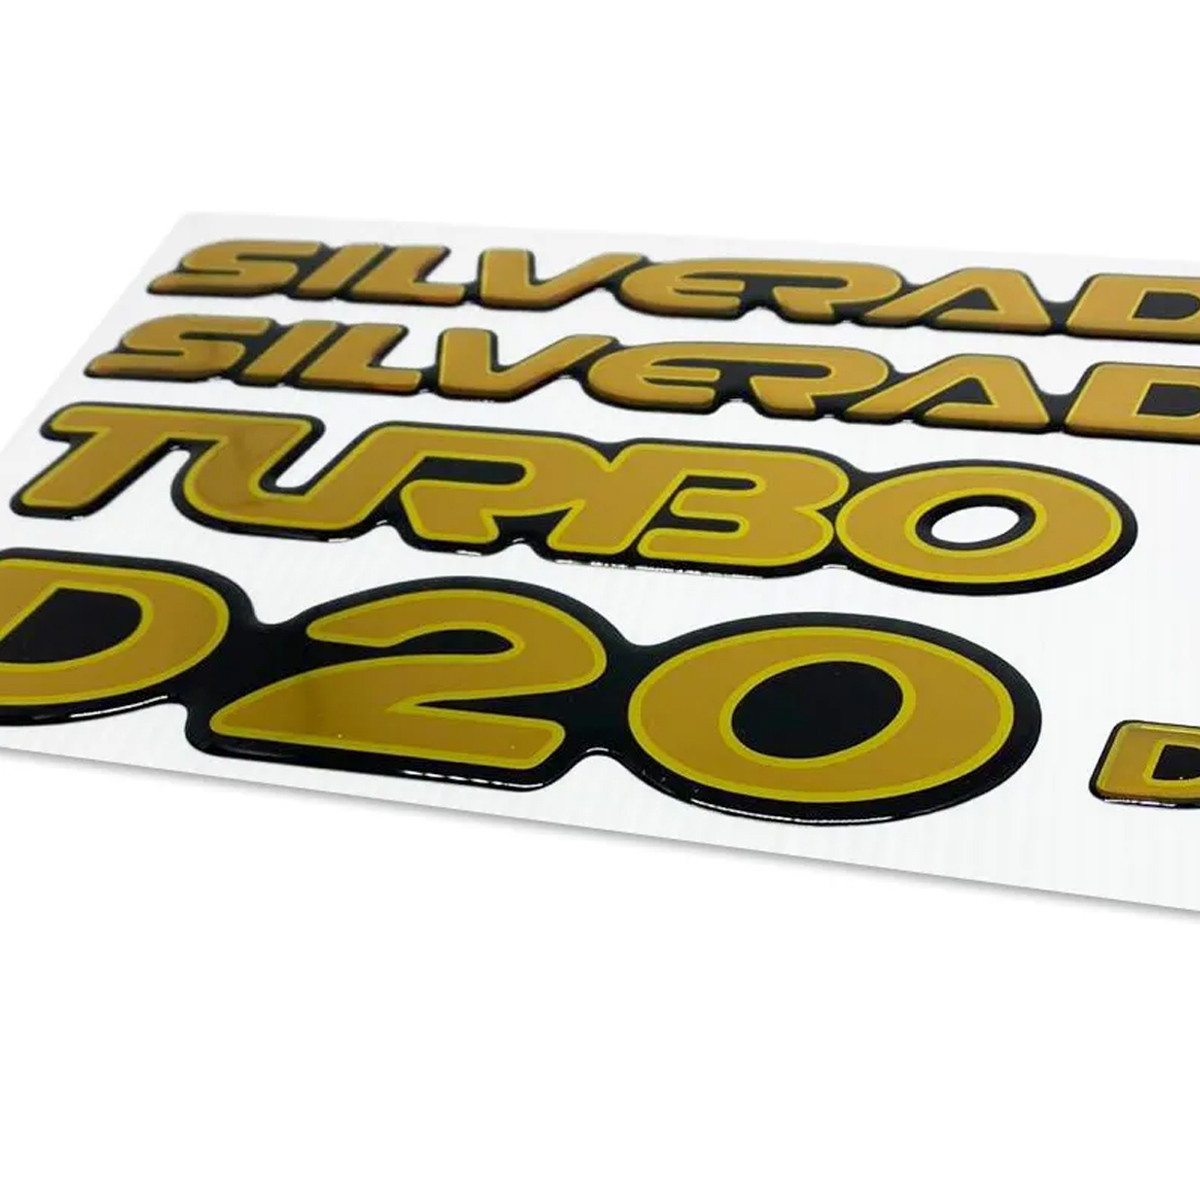 Kit Faixas + Emblemas Adesivos Silverado D20 Resinados 2000/2001